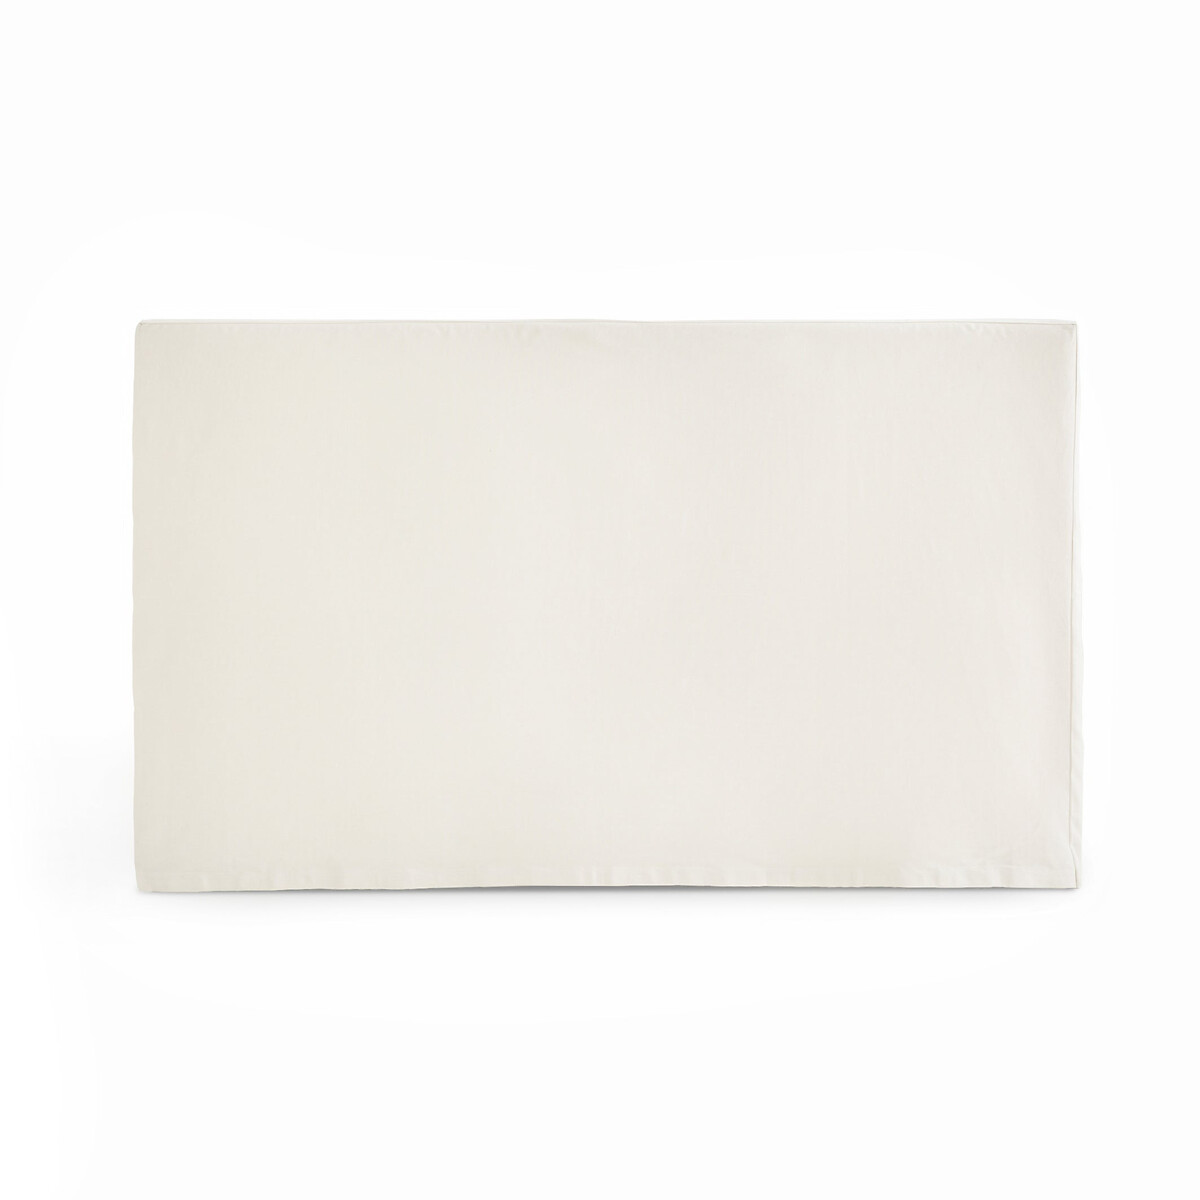 Чехол La Redoute Для изголовья кровати прямоугольной формы из хлопка SCENARIO 140 x 85 см белый, размер 140 x 85 см - фото 1